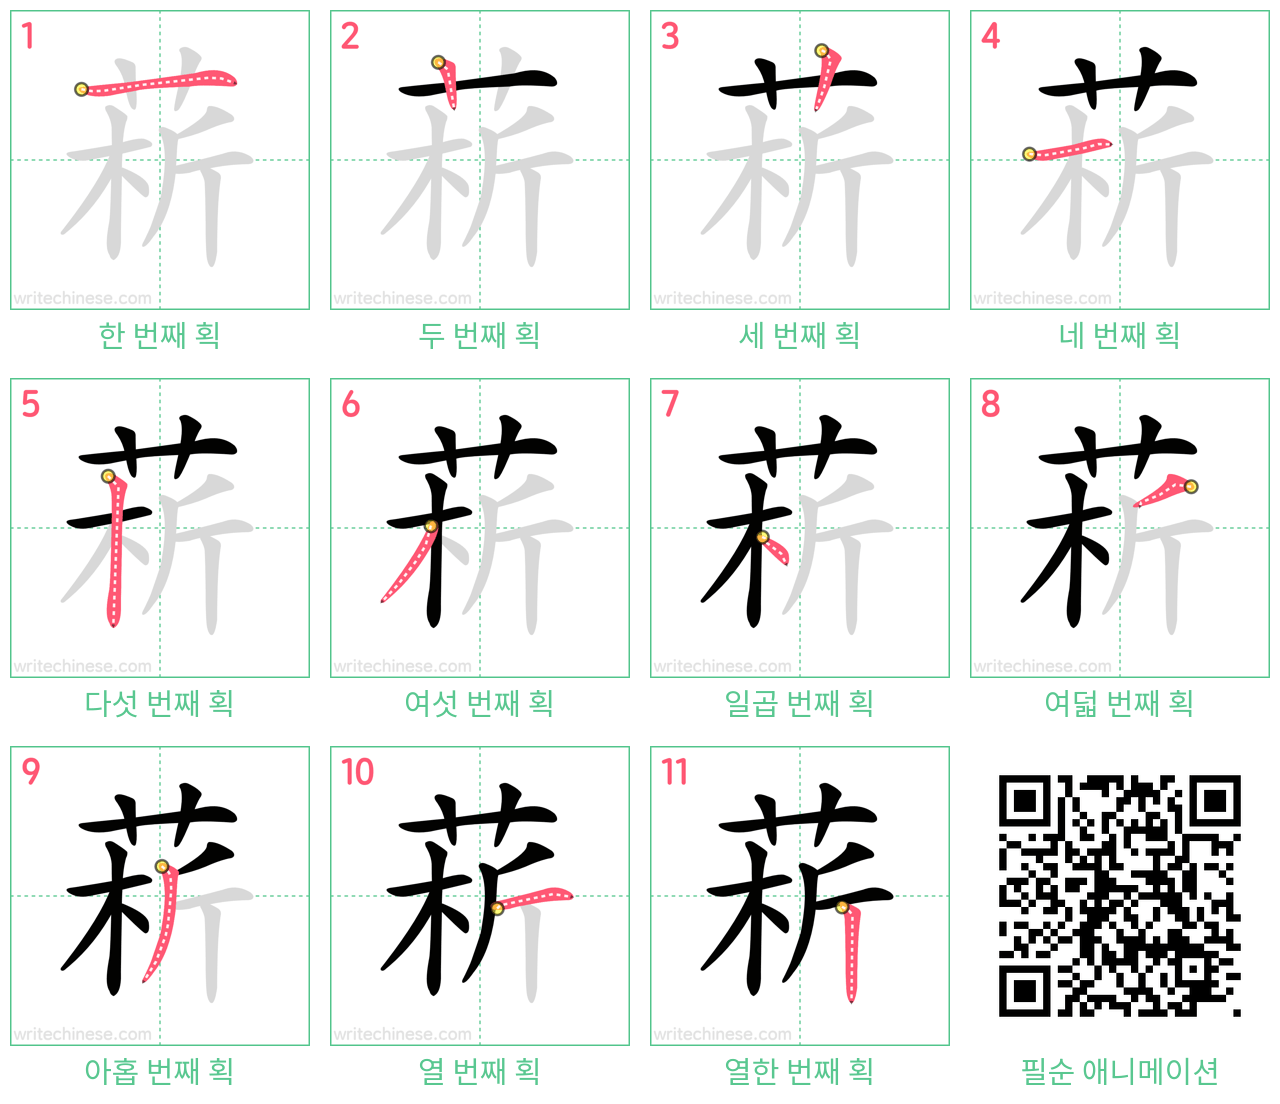 菥 step-by-step stroke order diagrams